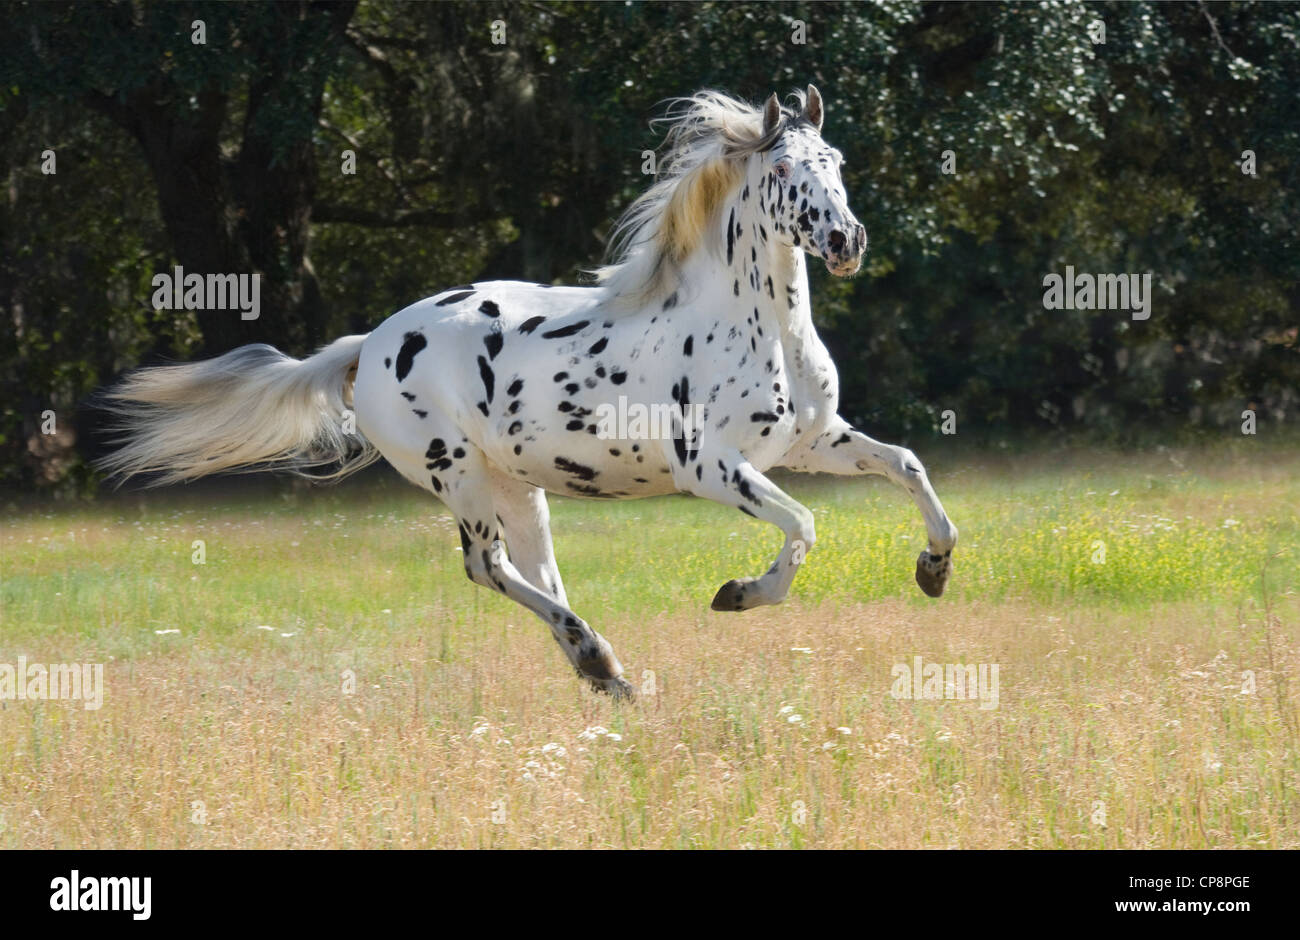 Knabstrupper horse mare. The Knabstrupper is a very rare Dutch breed. Stock Photo